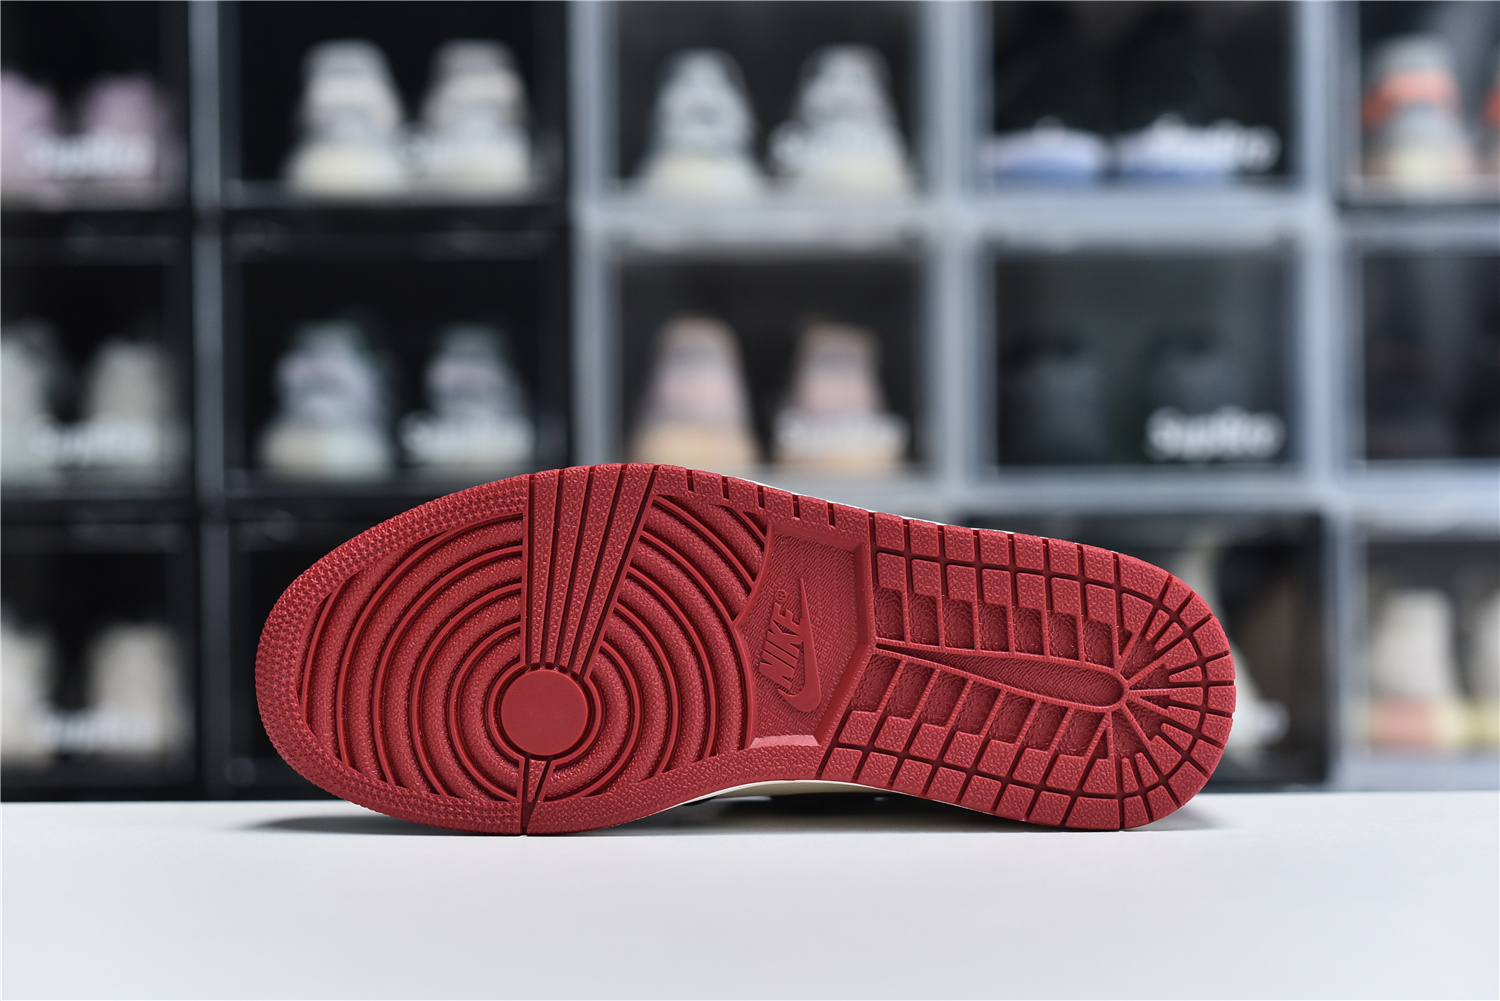 Nike Air Jordan 1 Retro High Og Red Black White Men Sneakers 555088 610 Kickbulk 3 - www.kickbulk.co